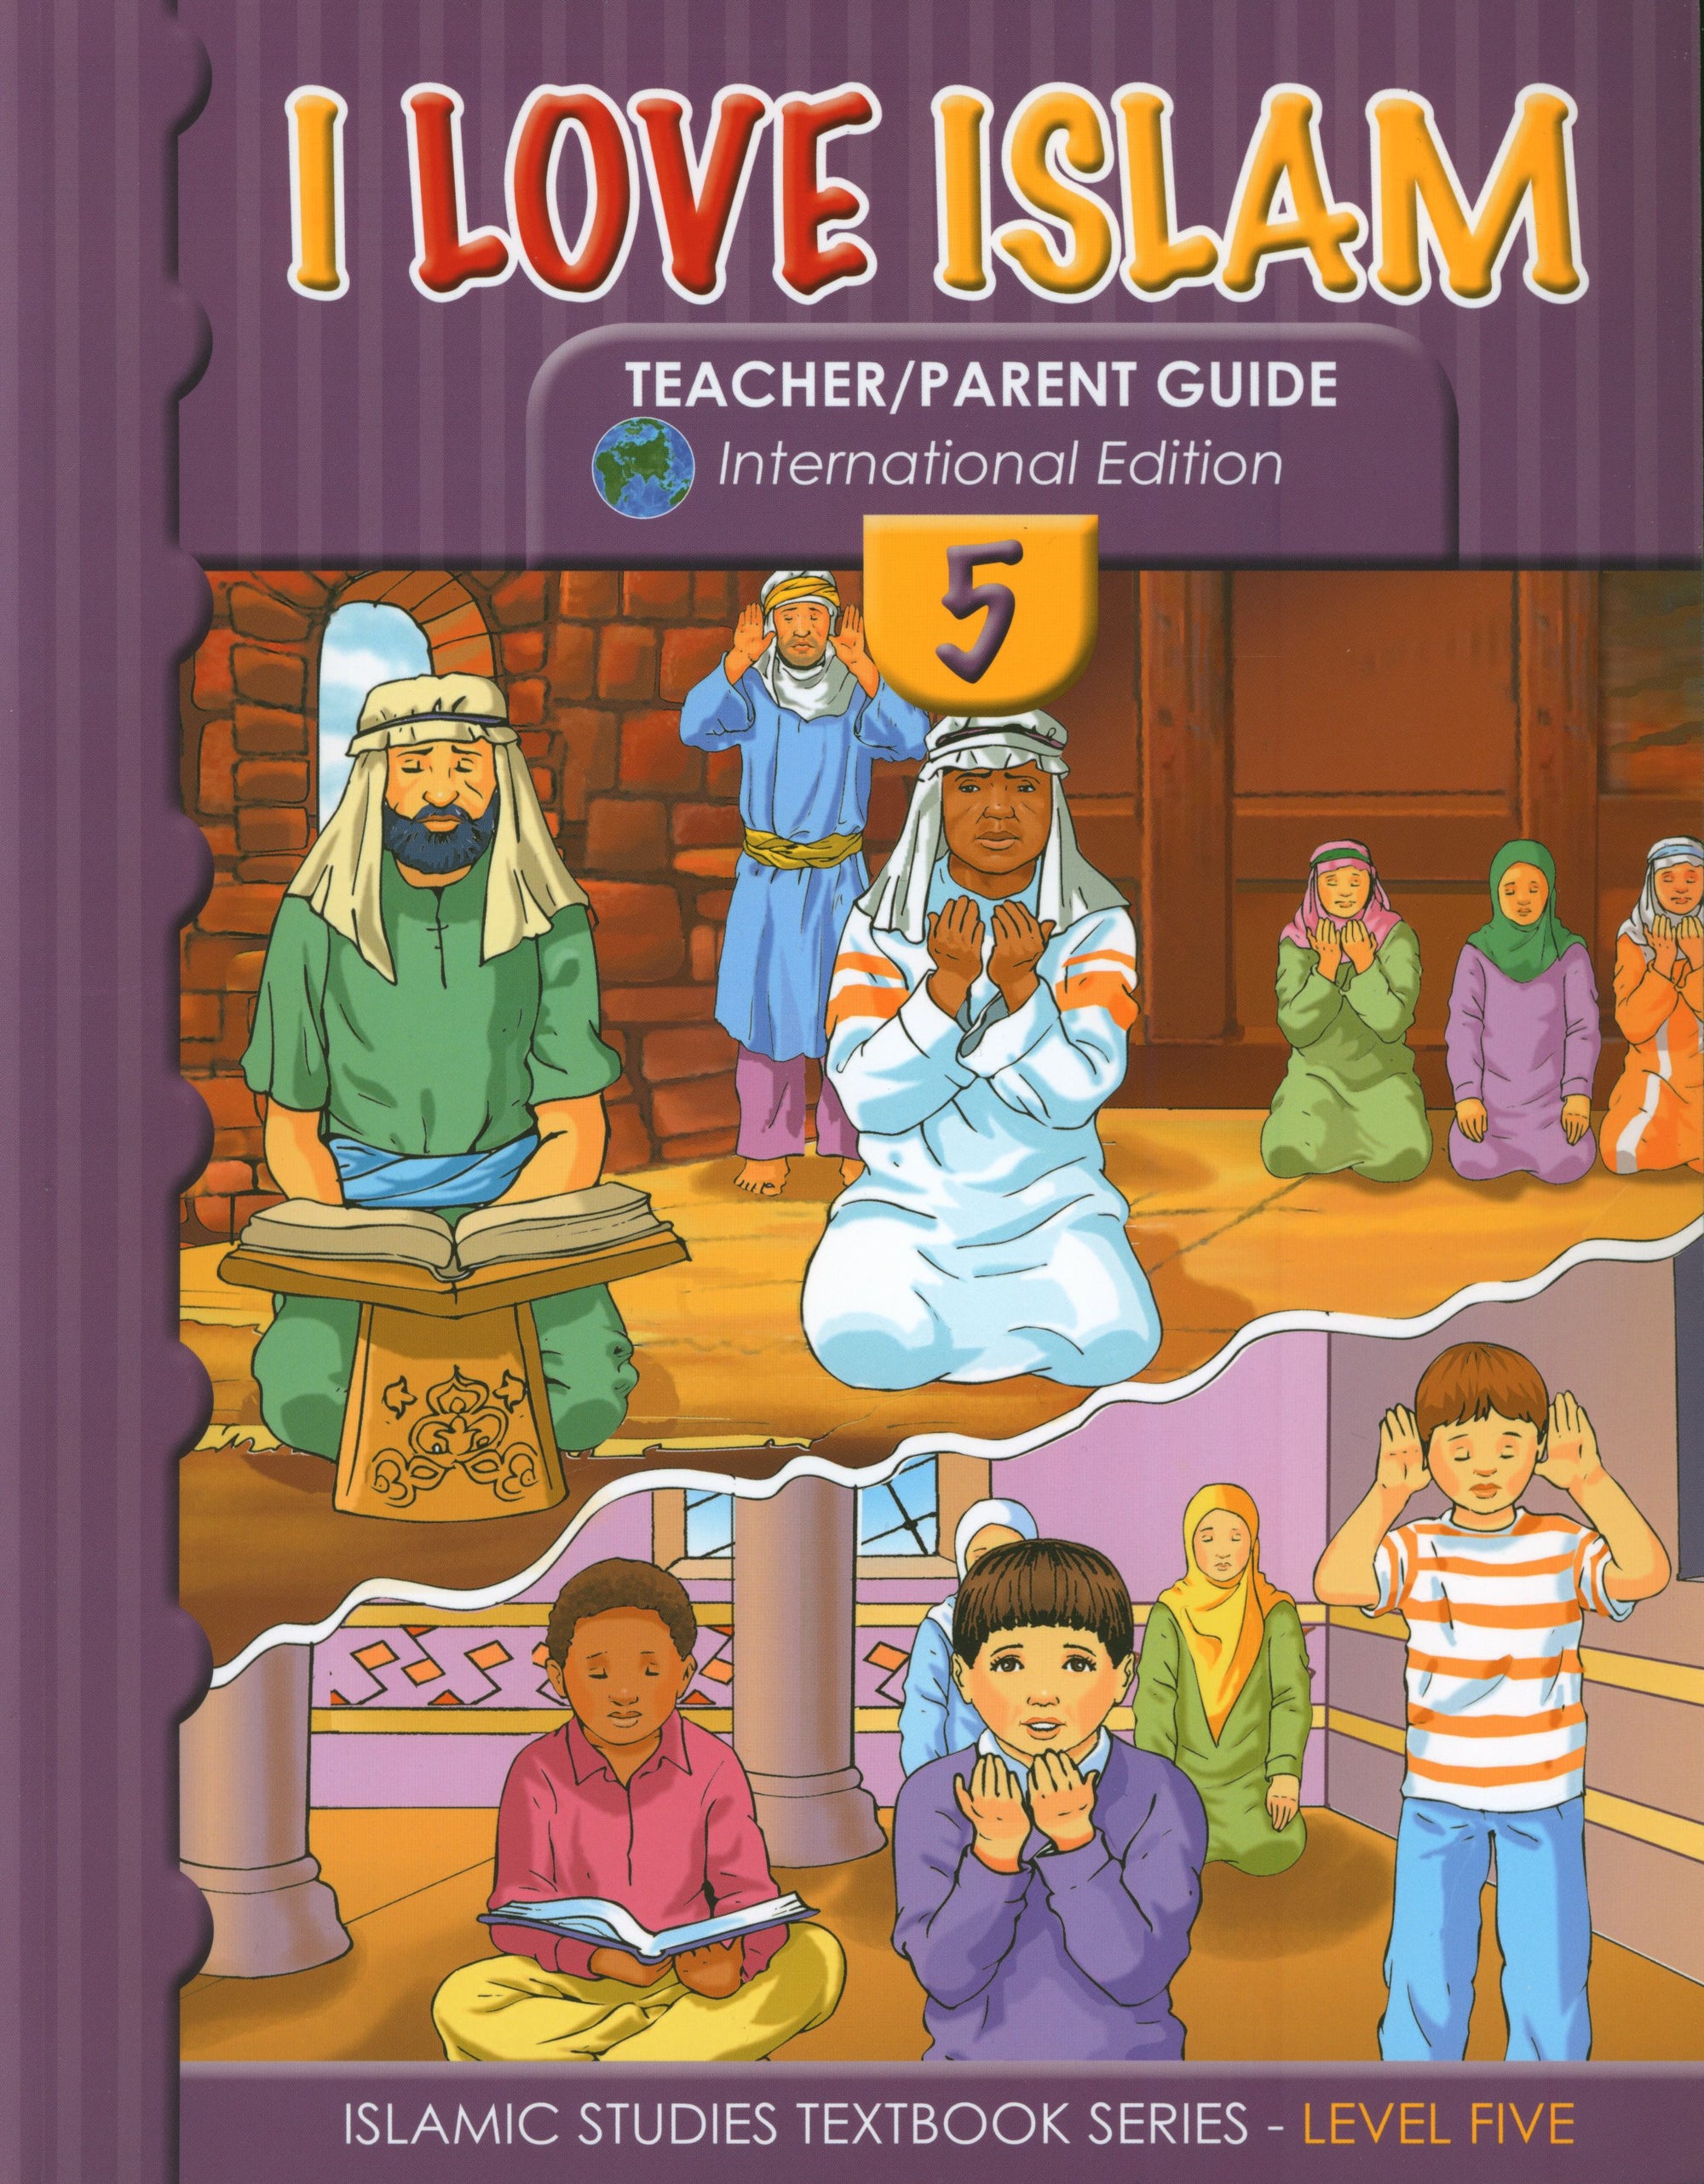 I Love Islam Weekend Edition Teacher / Parent Guide 5